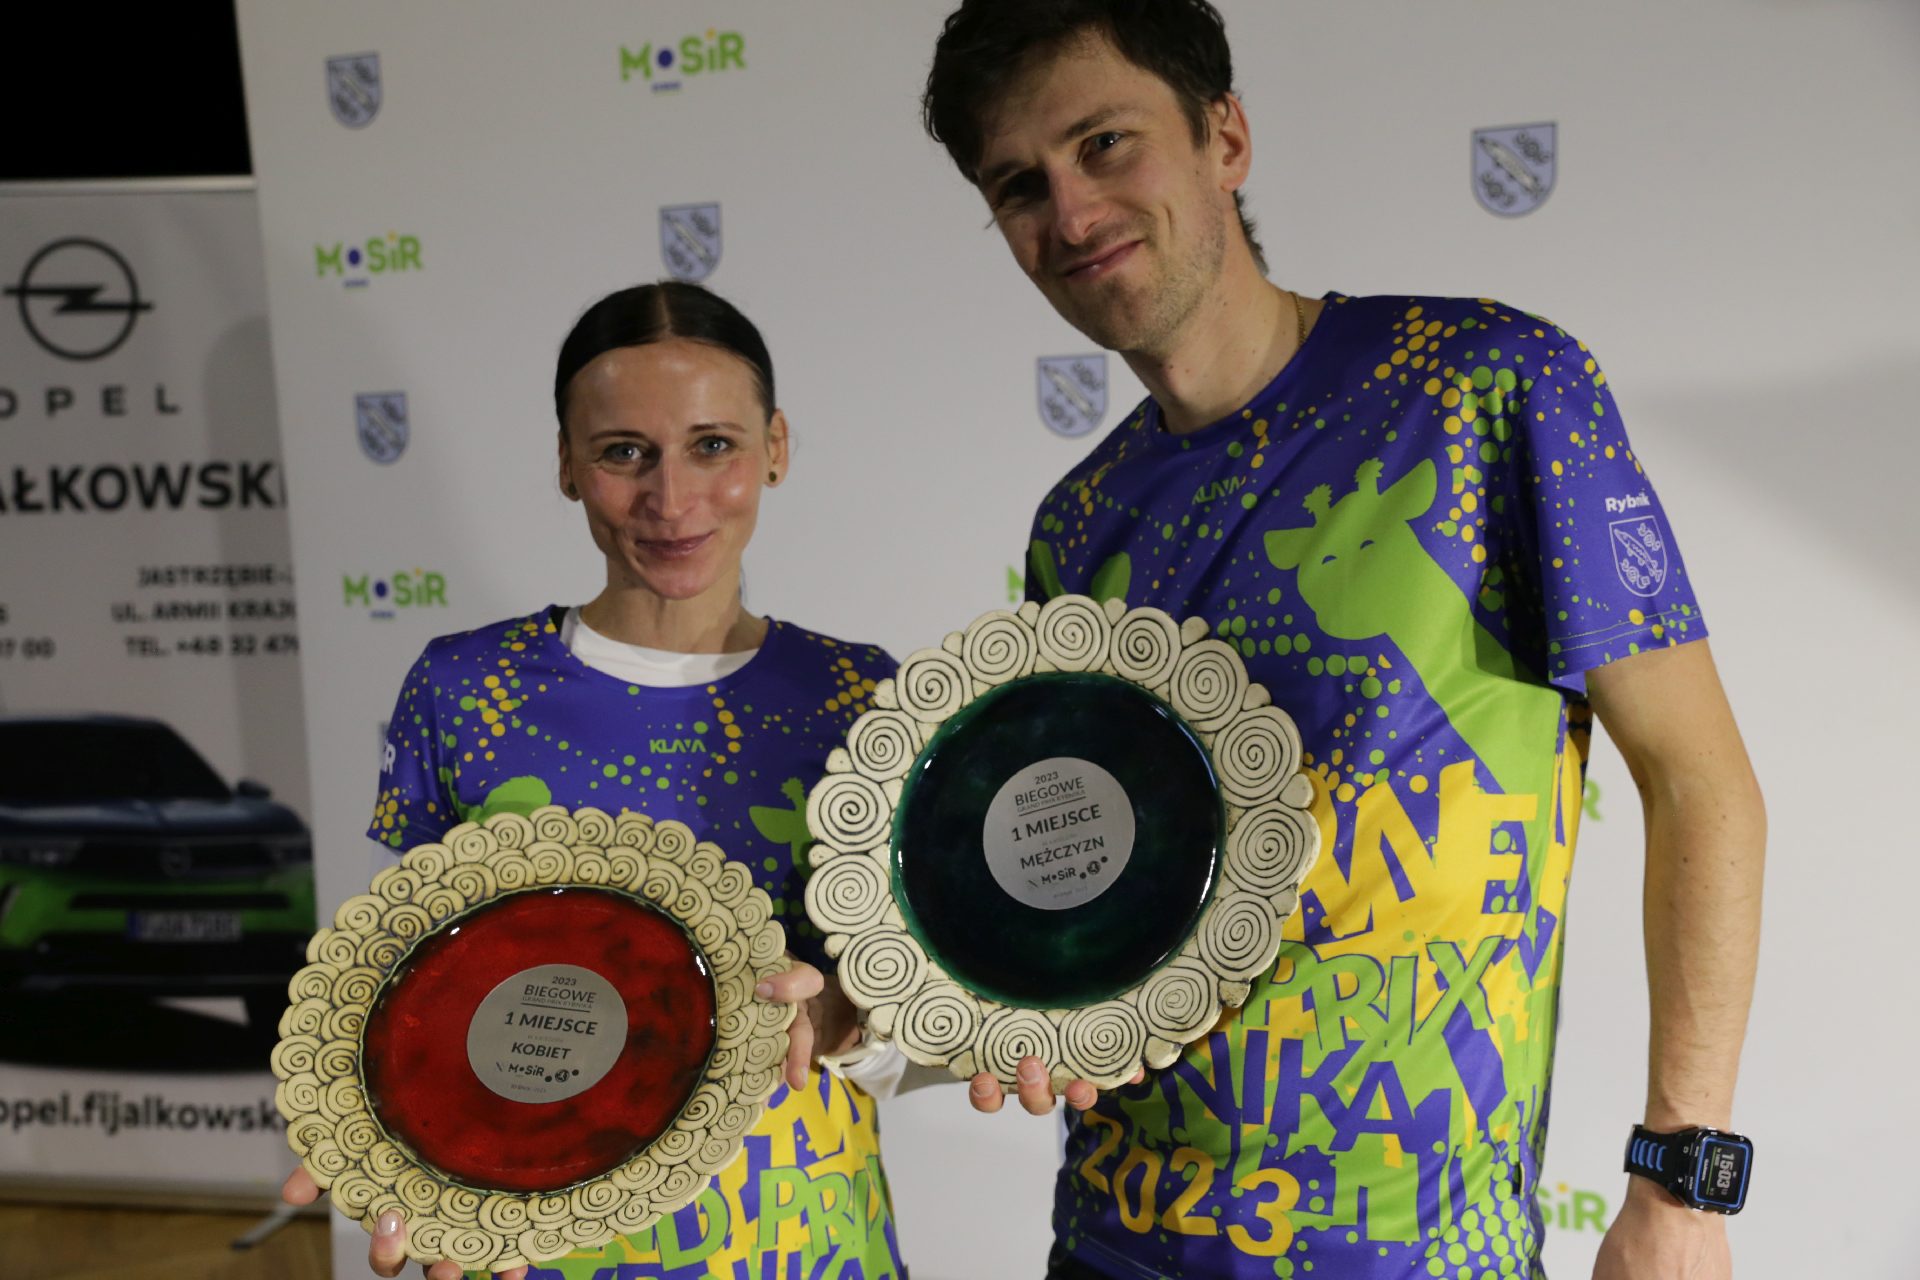 Zwycięzcy ubiegłorocznego Biegowego Grand Prix Rybnika, utytułowani rybniccy biegacze Joanna Griman i Marcin Ciepłak. Zdj. Wacław Troszka